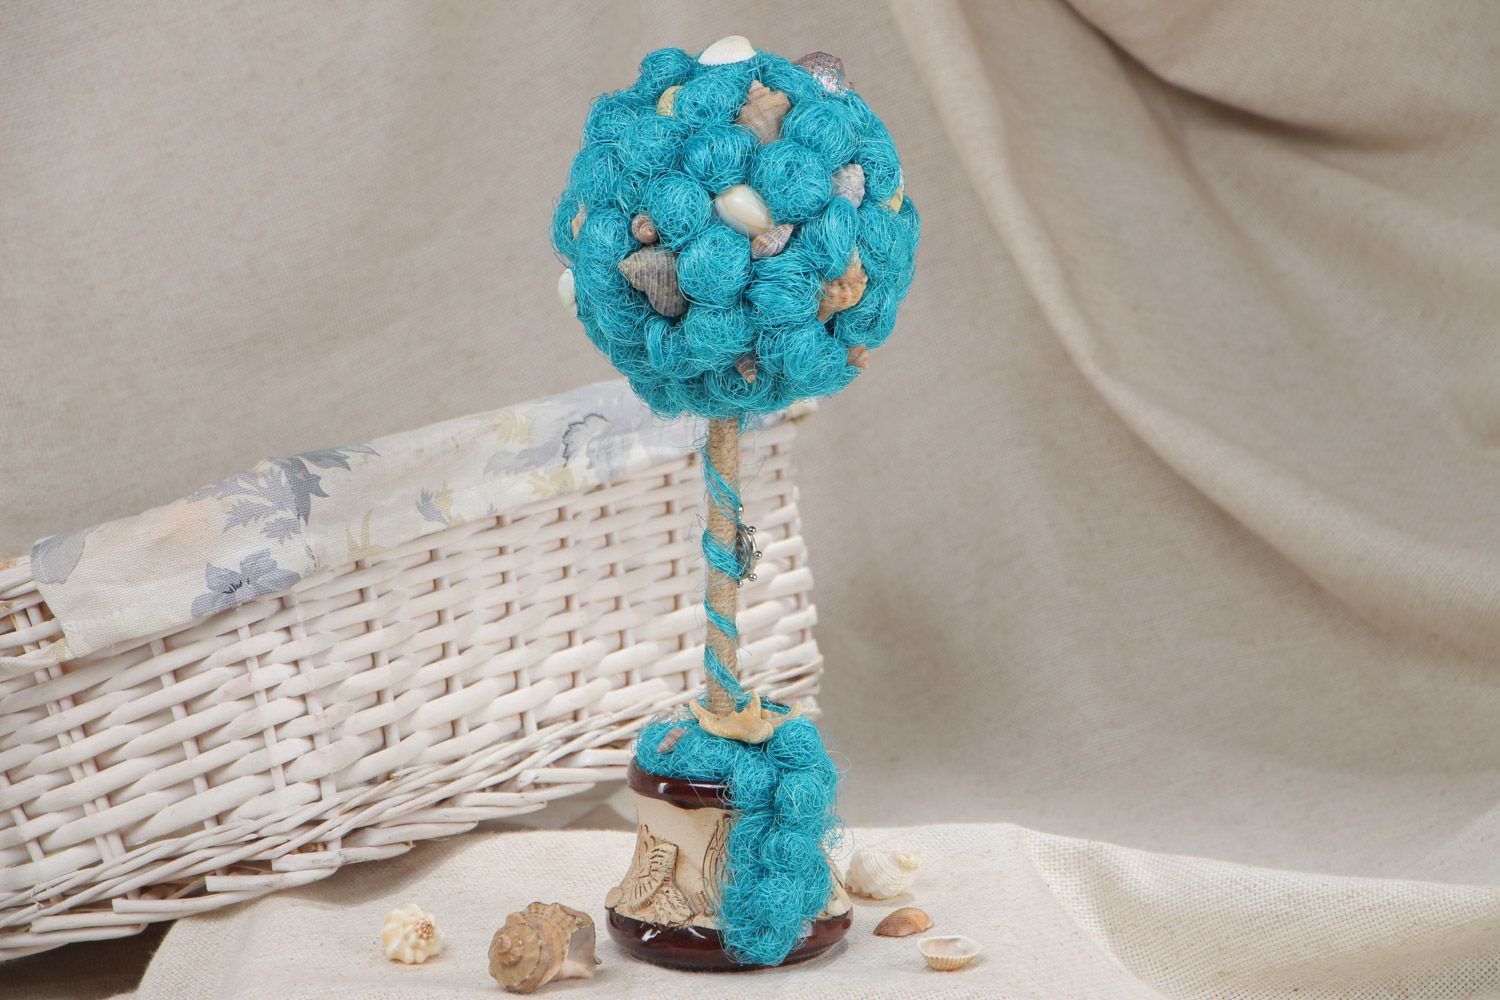 Дерево из натуральных материалов сизаля и ракушек ручной работы в голубых тонах фото 1